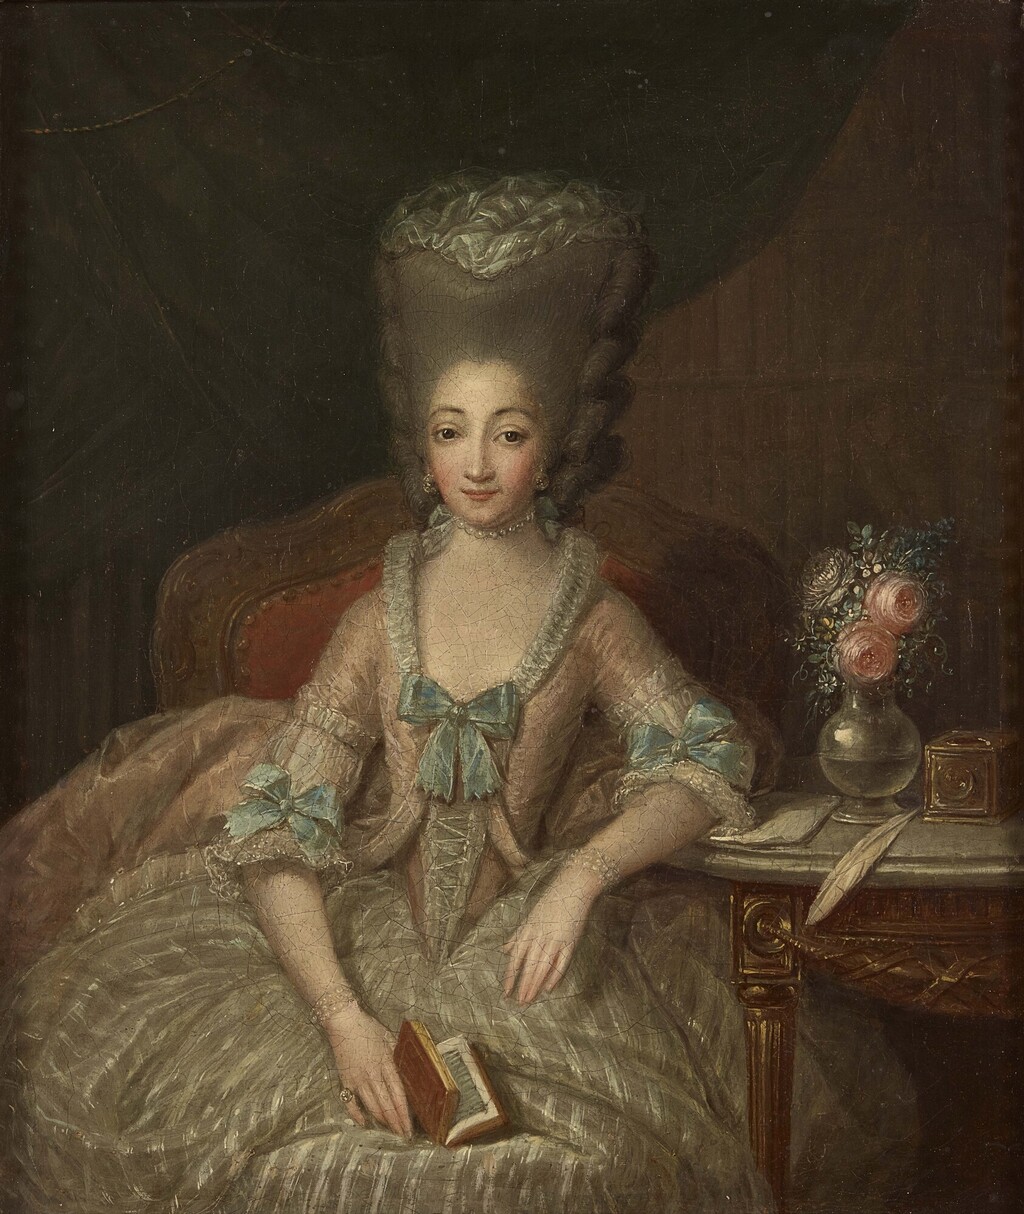 Portraits de Marie-Antoinette et de la famille royale par Charles Le Clercq ou Leclerq - Page 4 Image672